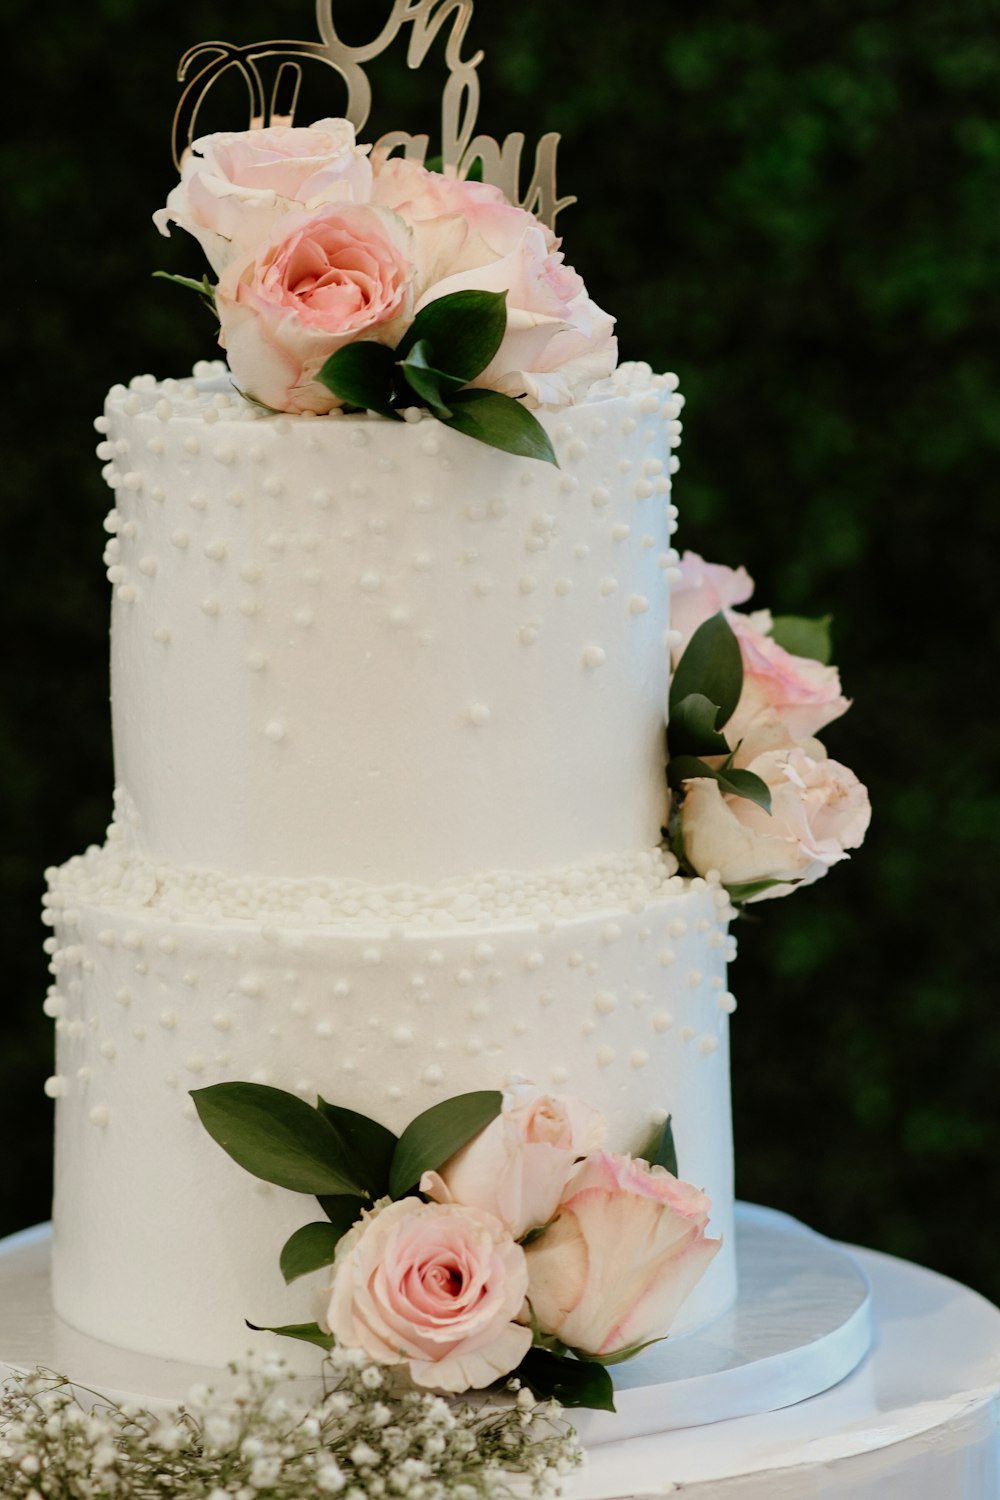 분홍색 장미와 흰색 케이크